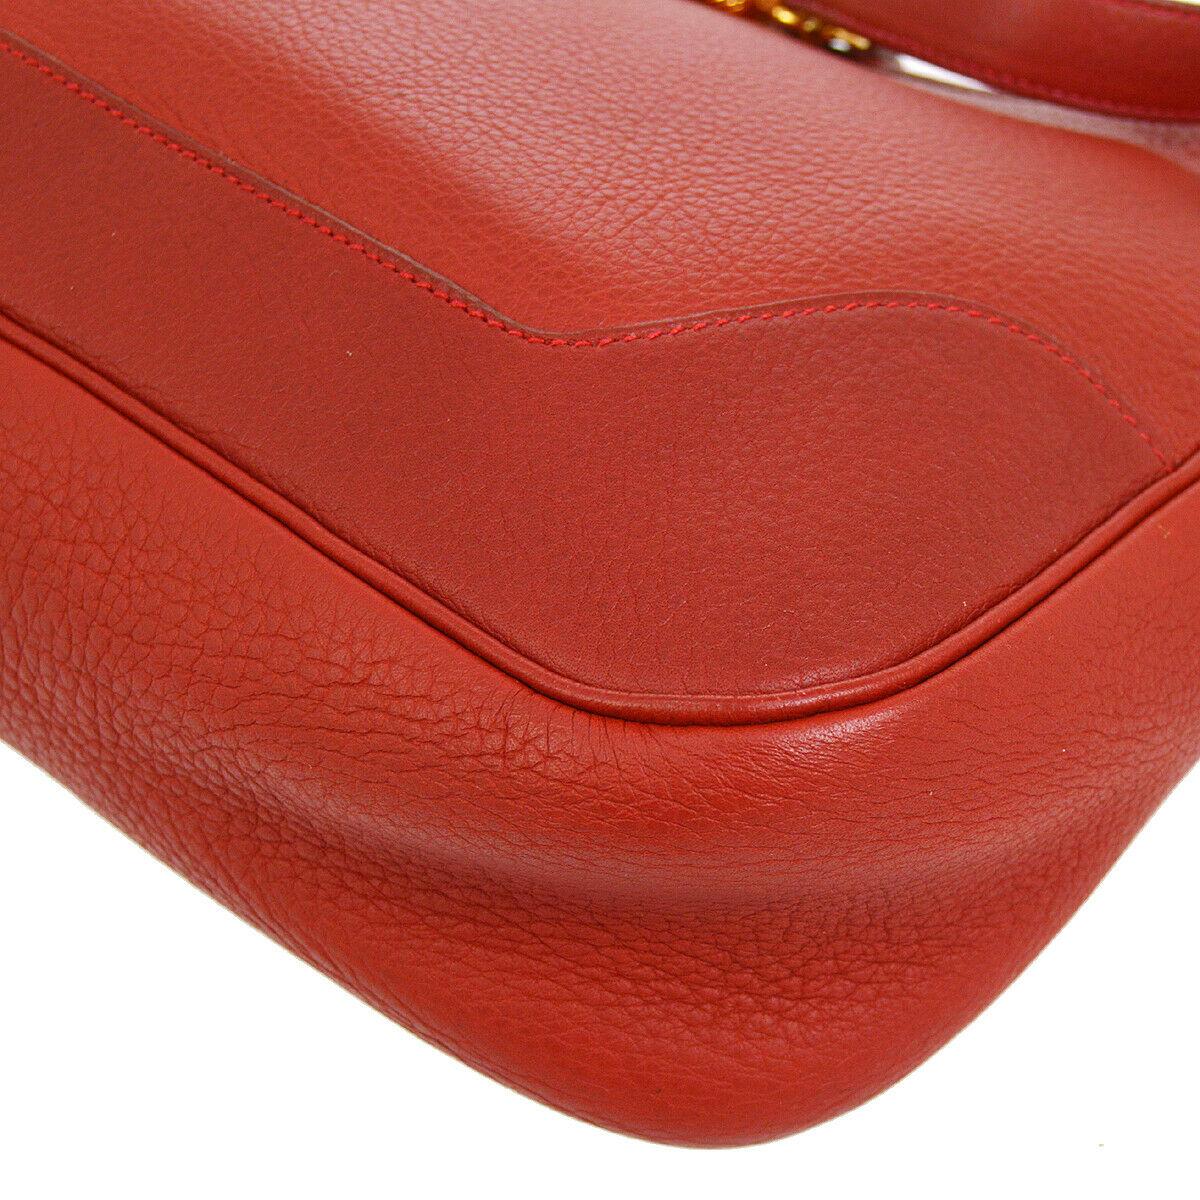 Hermes Red Leather Gold Accent Hardware Hobo Carryall Shoulder Flap Bag 1